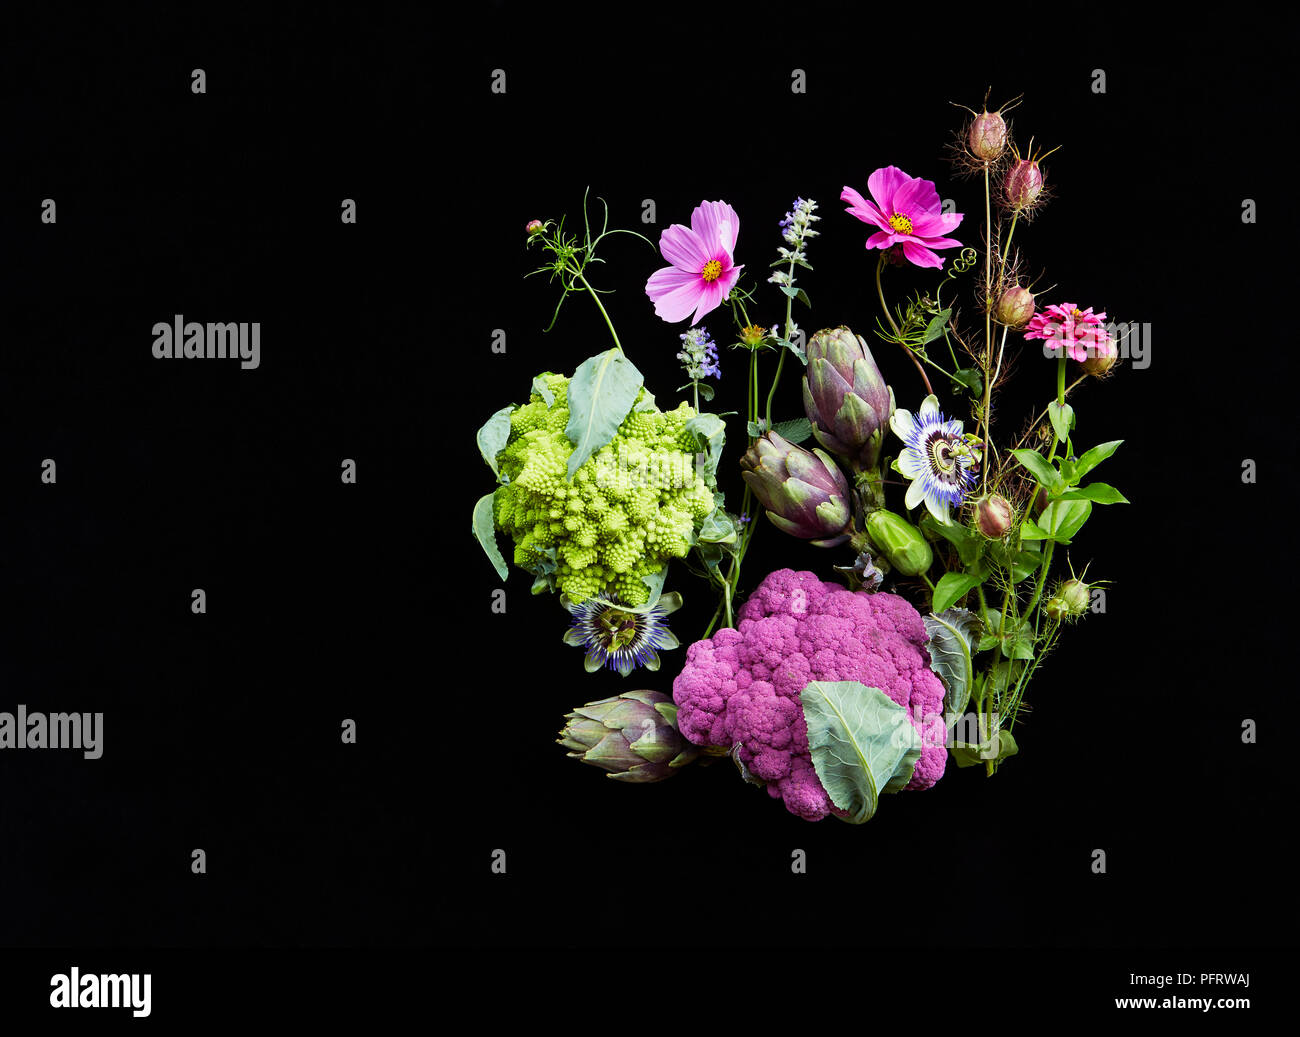 Auswahl der biodynamischen Blumen und Pflanzen einschließlich Blumenkohl/Karfiol und Artischocken Stockfoto